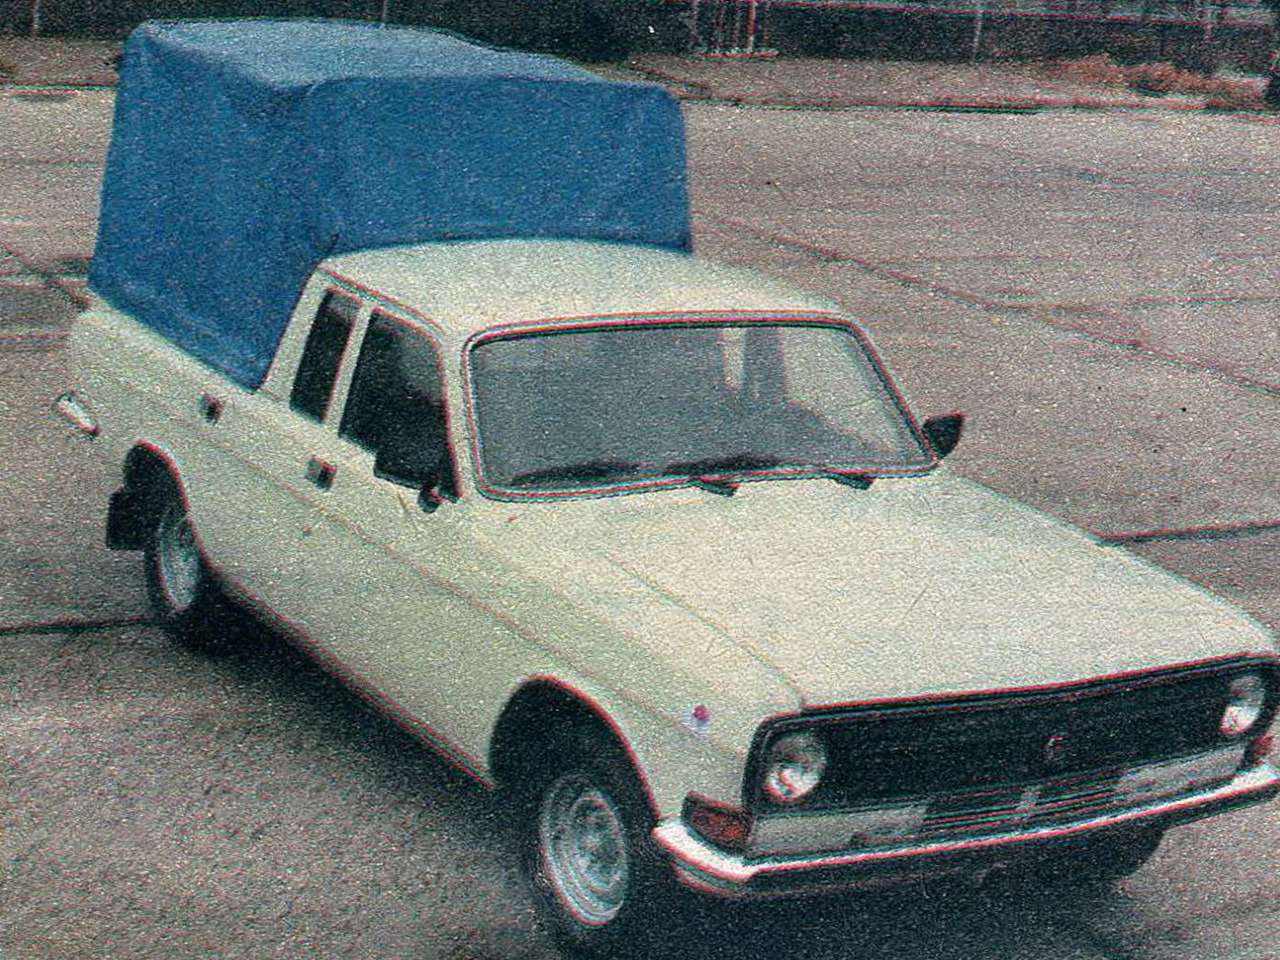 Двигатель V6 и правый руль: такие Волги не выпускали в СССР — фото 1292576